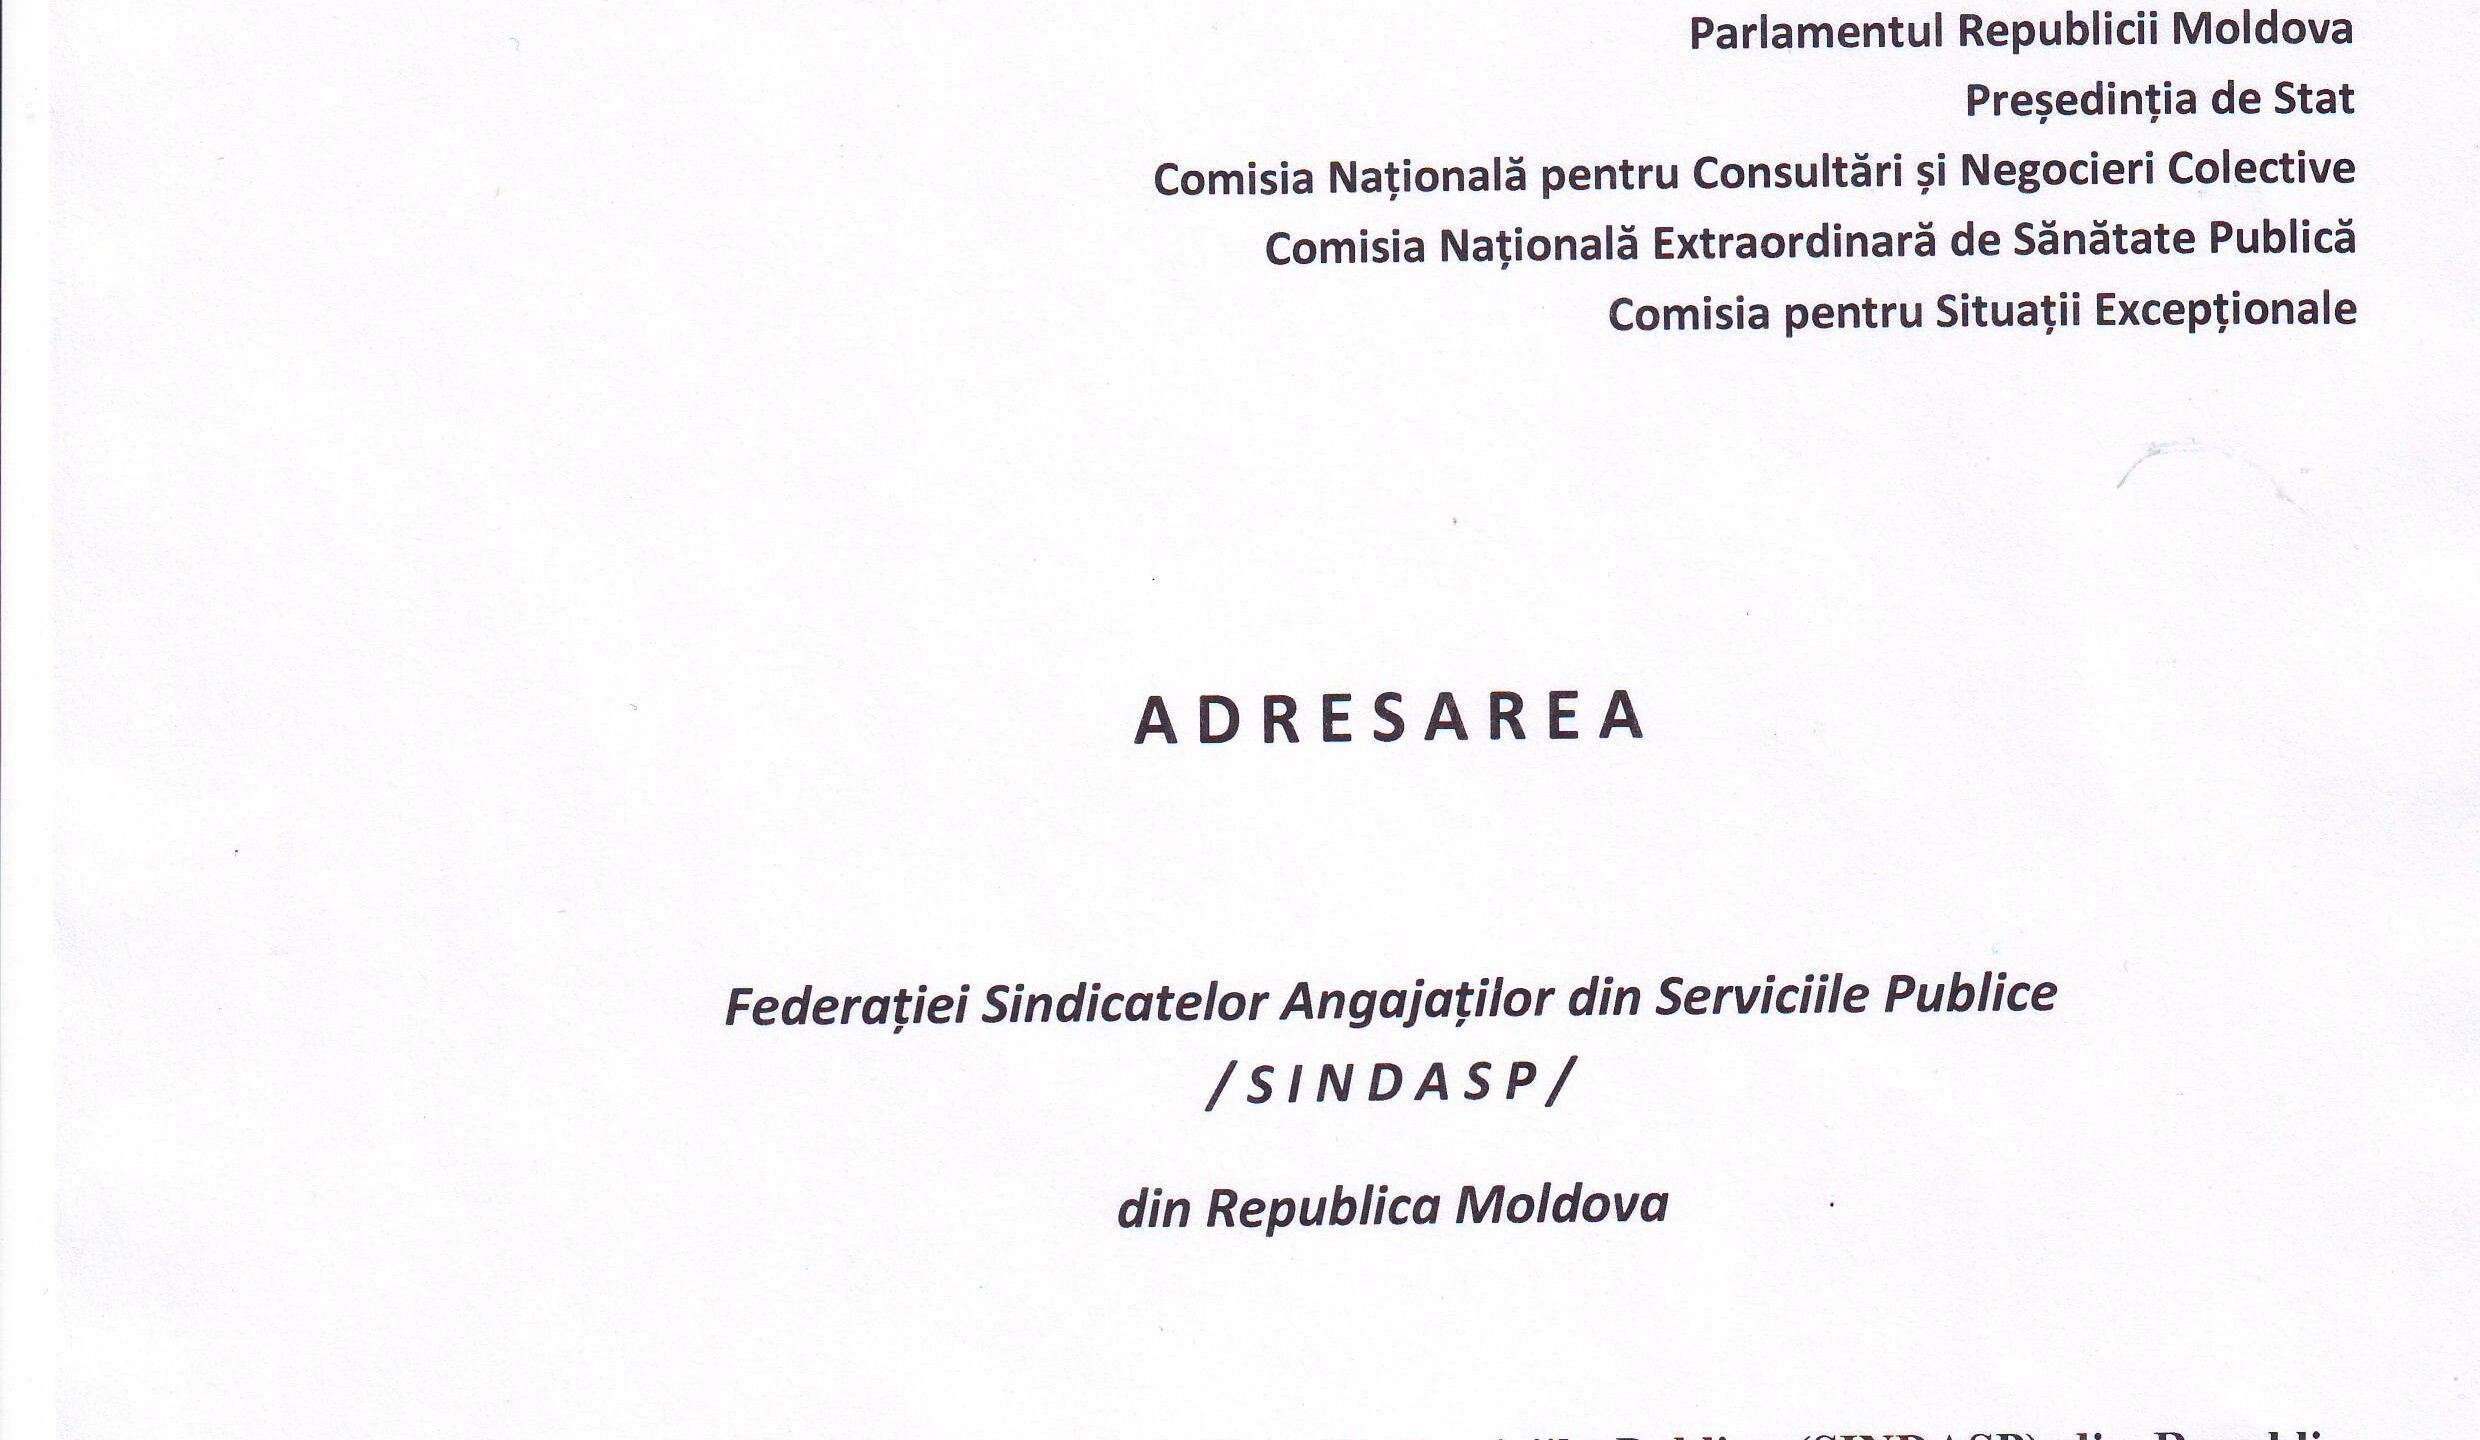 ADRESAREA Federației SINDASP, prin care se solicită anularea Hotărârii CNESP nr.33 din 28.09.2020, privind acordarea indemnizației unice în mărime de 16.000 lei angajaților instituțiilor bugetare care s-au infectat cu Covid-19